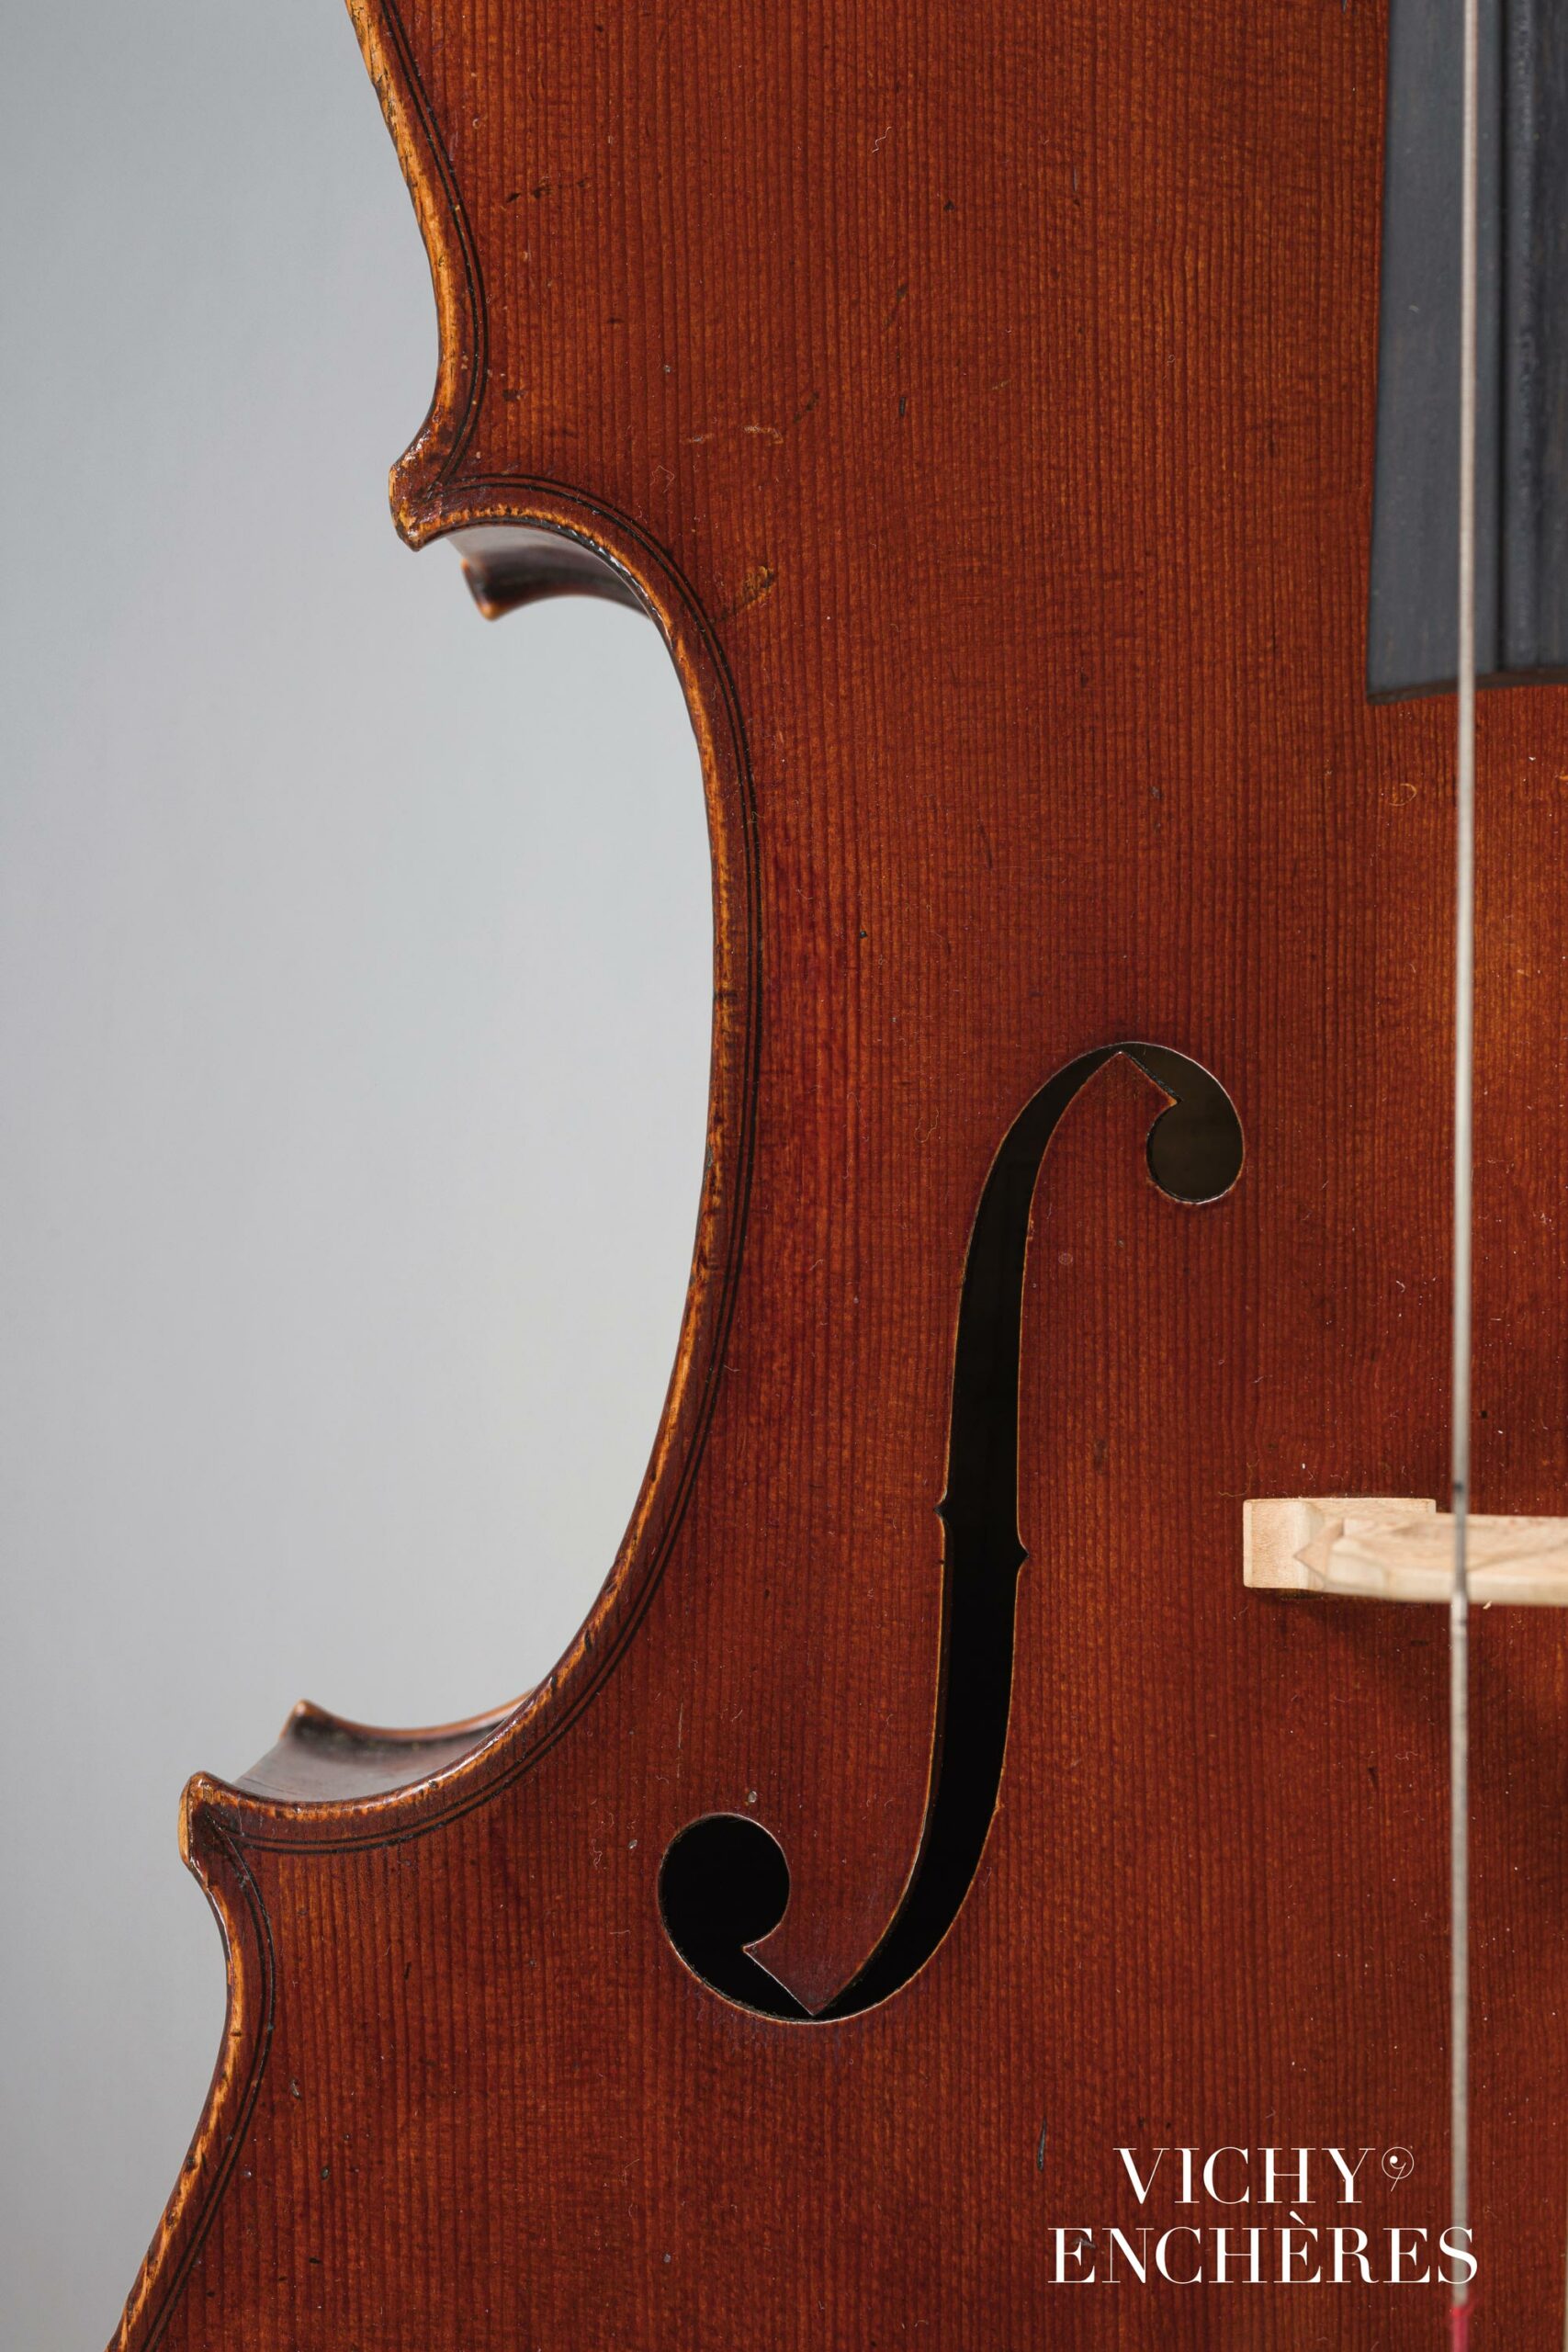 Violoncelle de Sébastien Auguste DEROUX Instrument mis en vente par Vichy Enchères le 1 juin 2023 © C. Darbelet